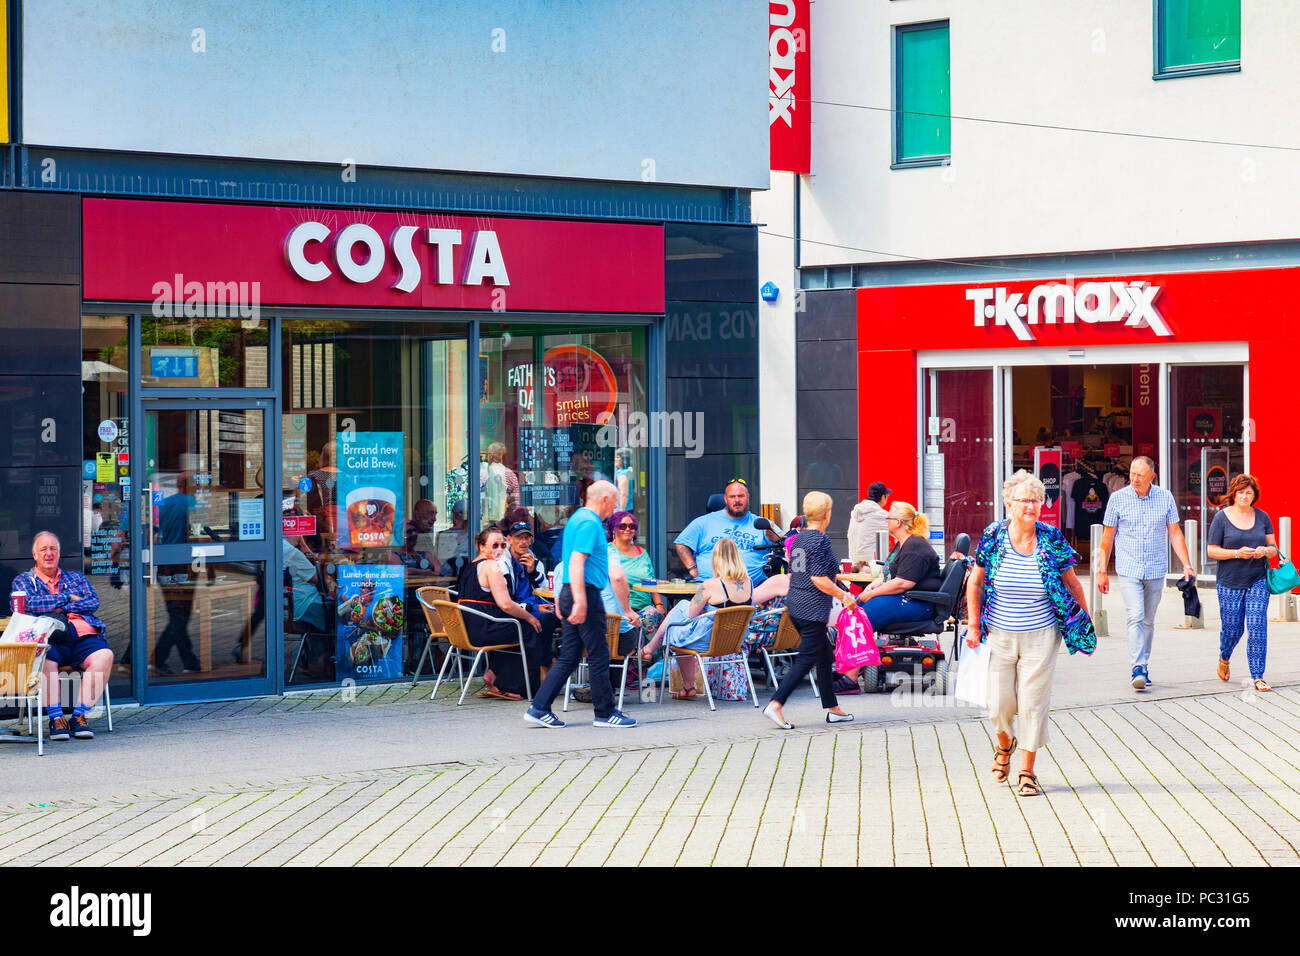 11 Juin 2018 : St Austell, Cornwall, UK - Café Costa, avec un groupe de personnes assises à l'extérieur. Banque D'Images